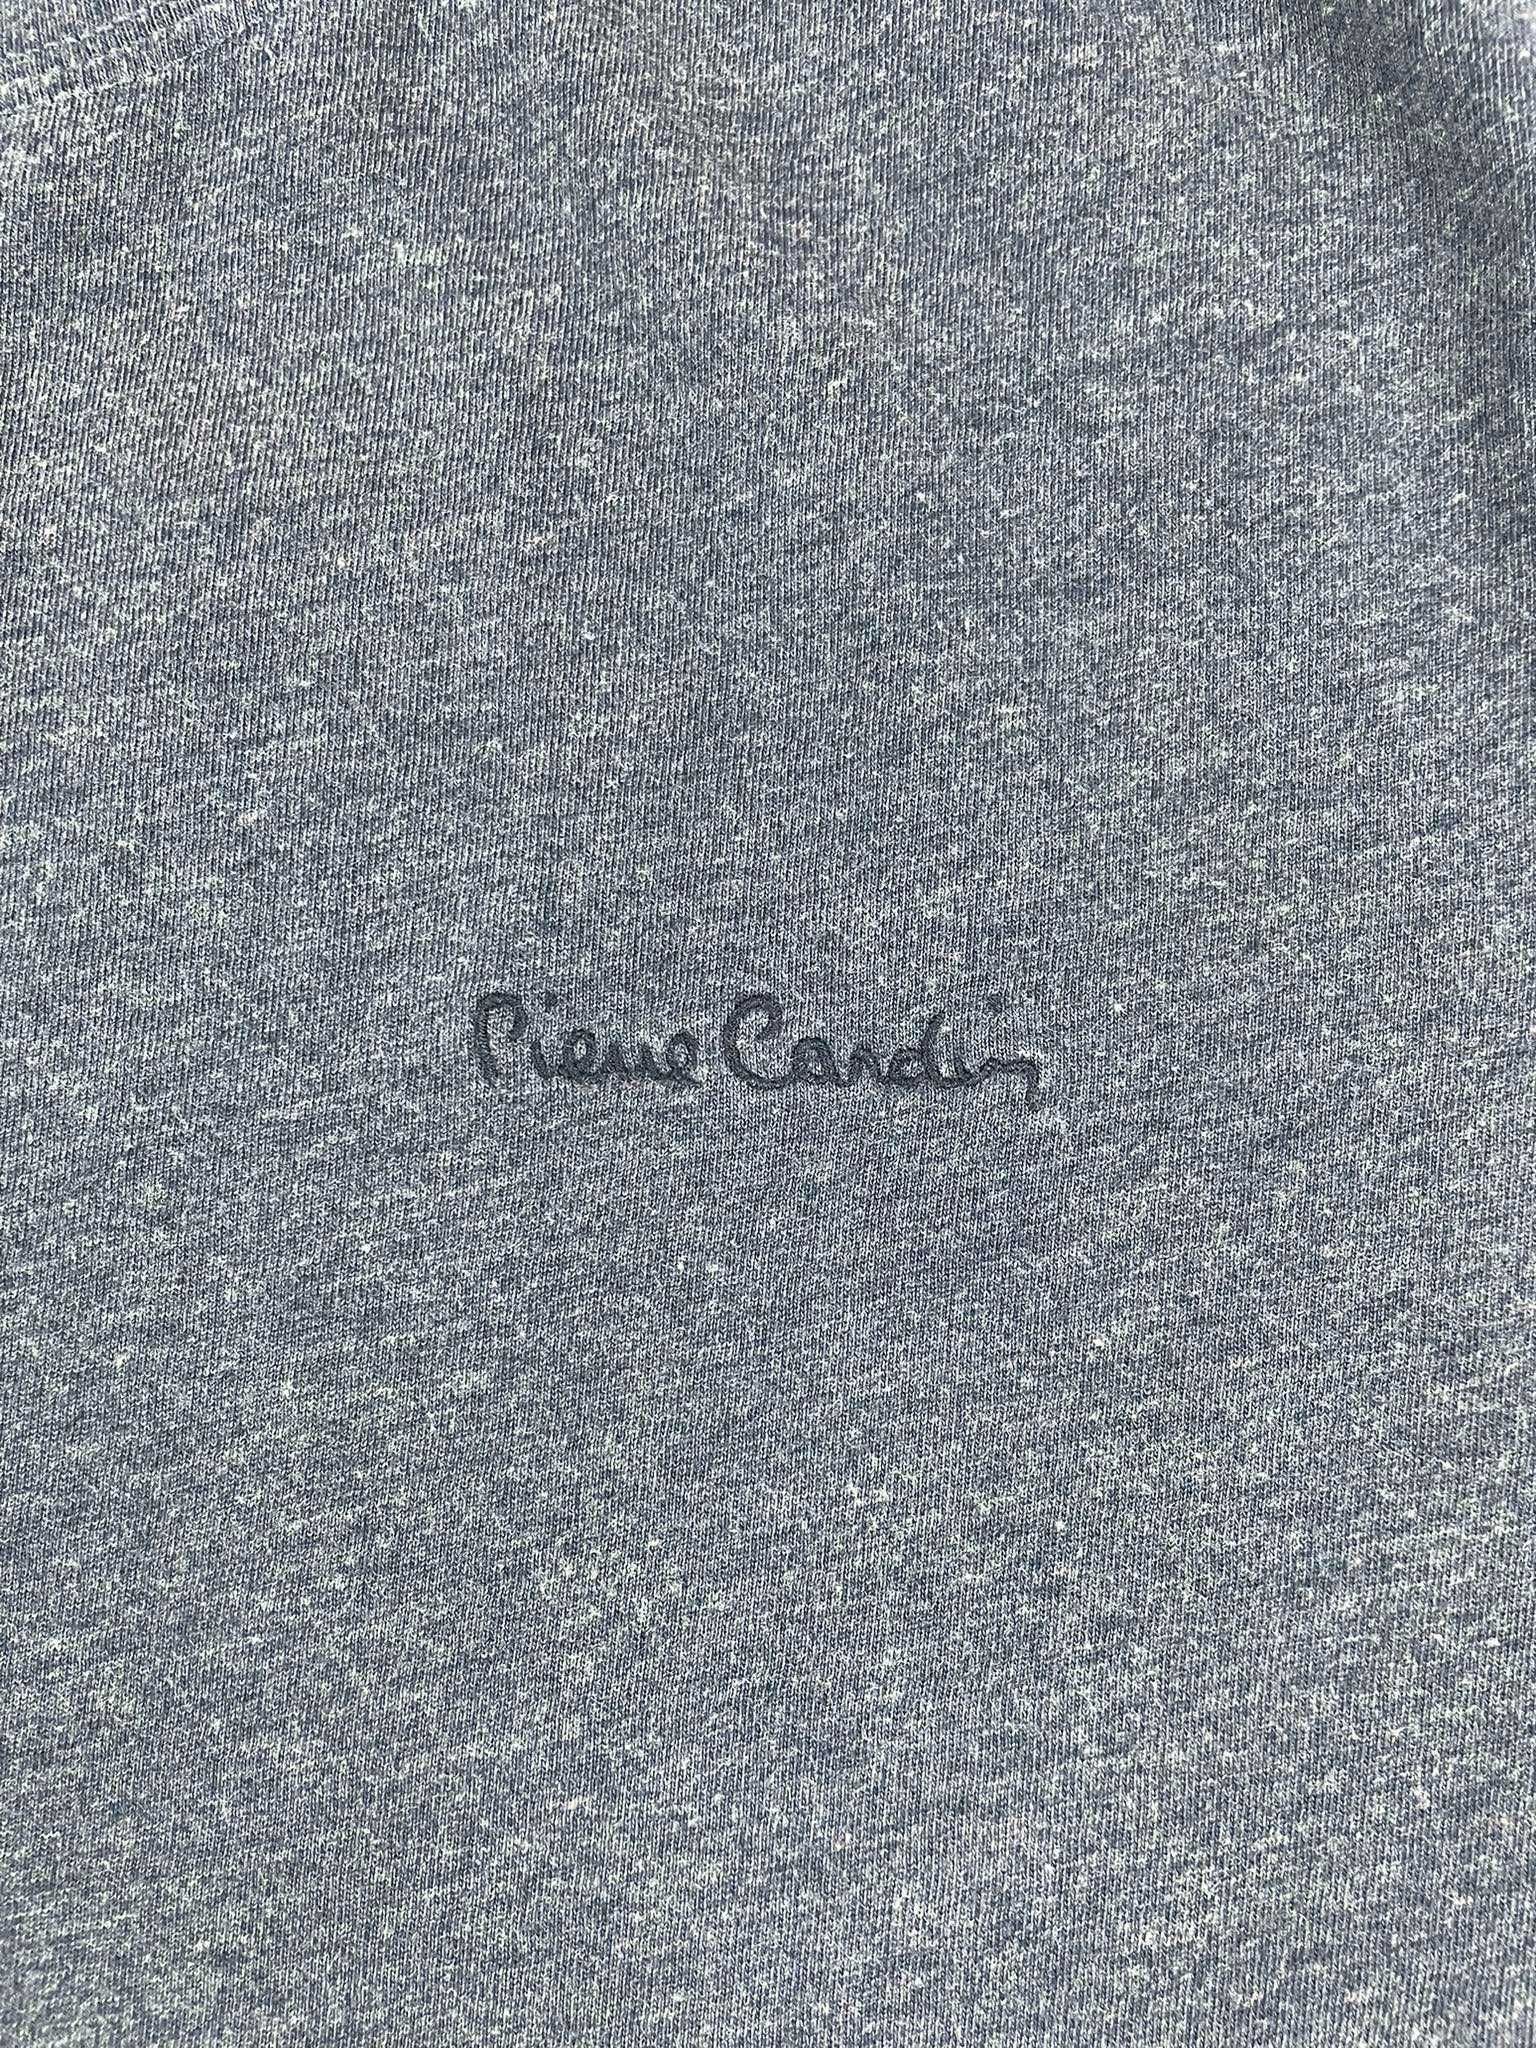 Koszulka Pierre Cardin S granatowa